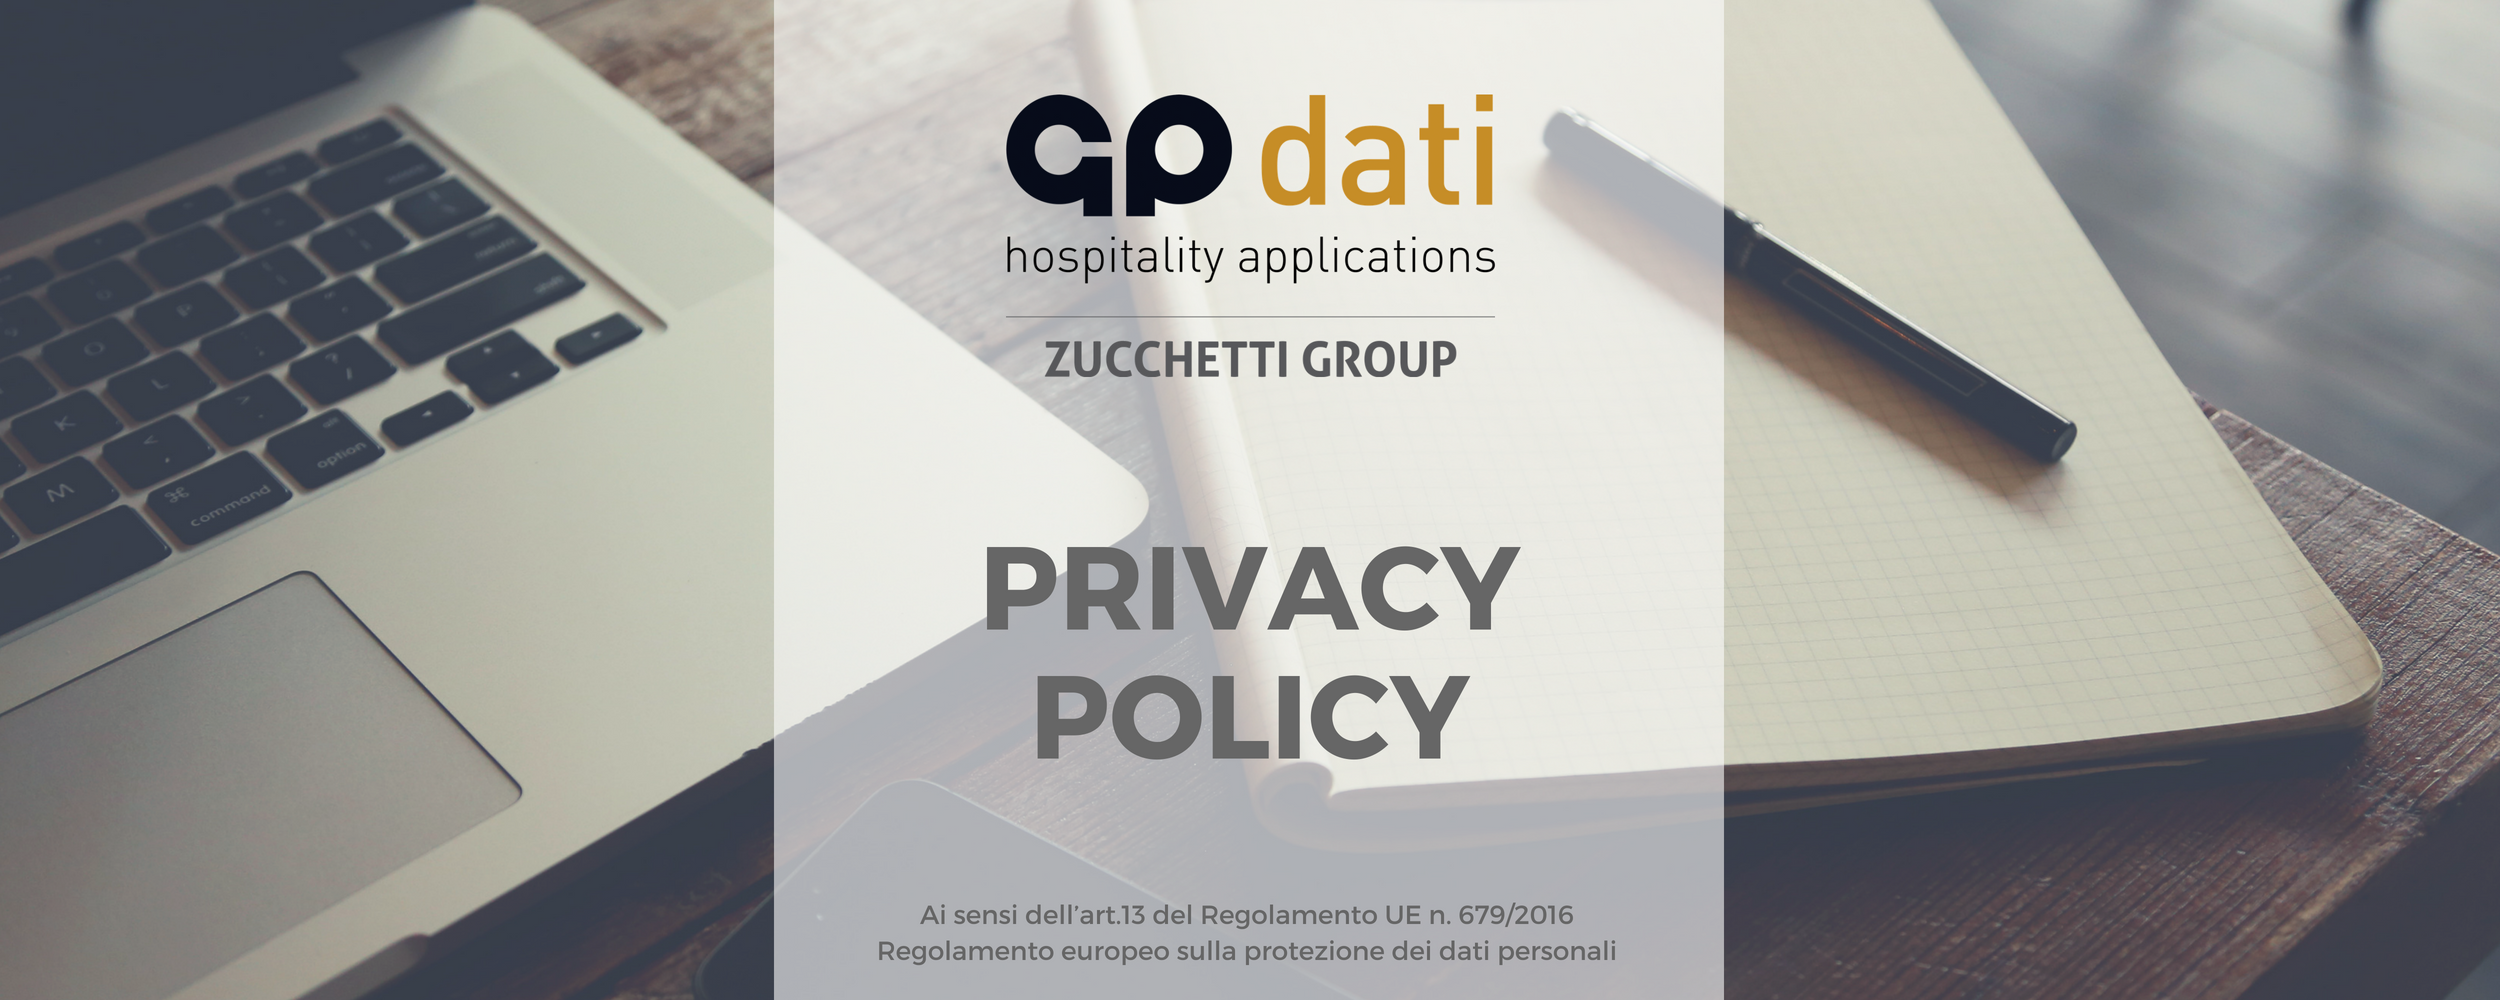 Privacy Policy GP Dati